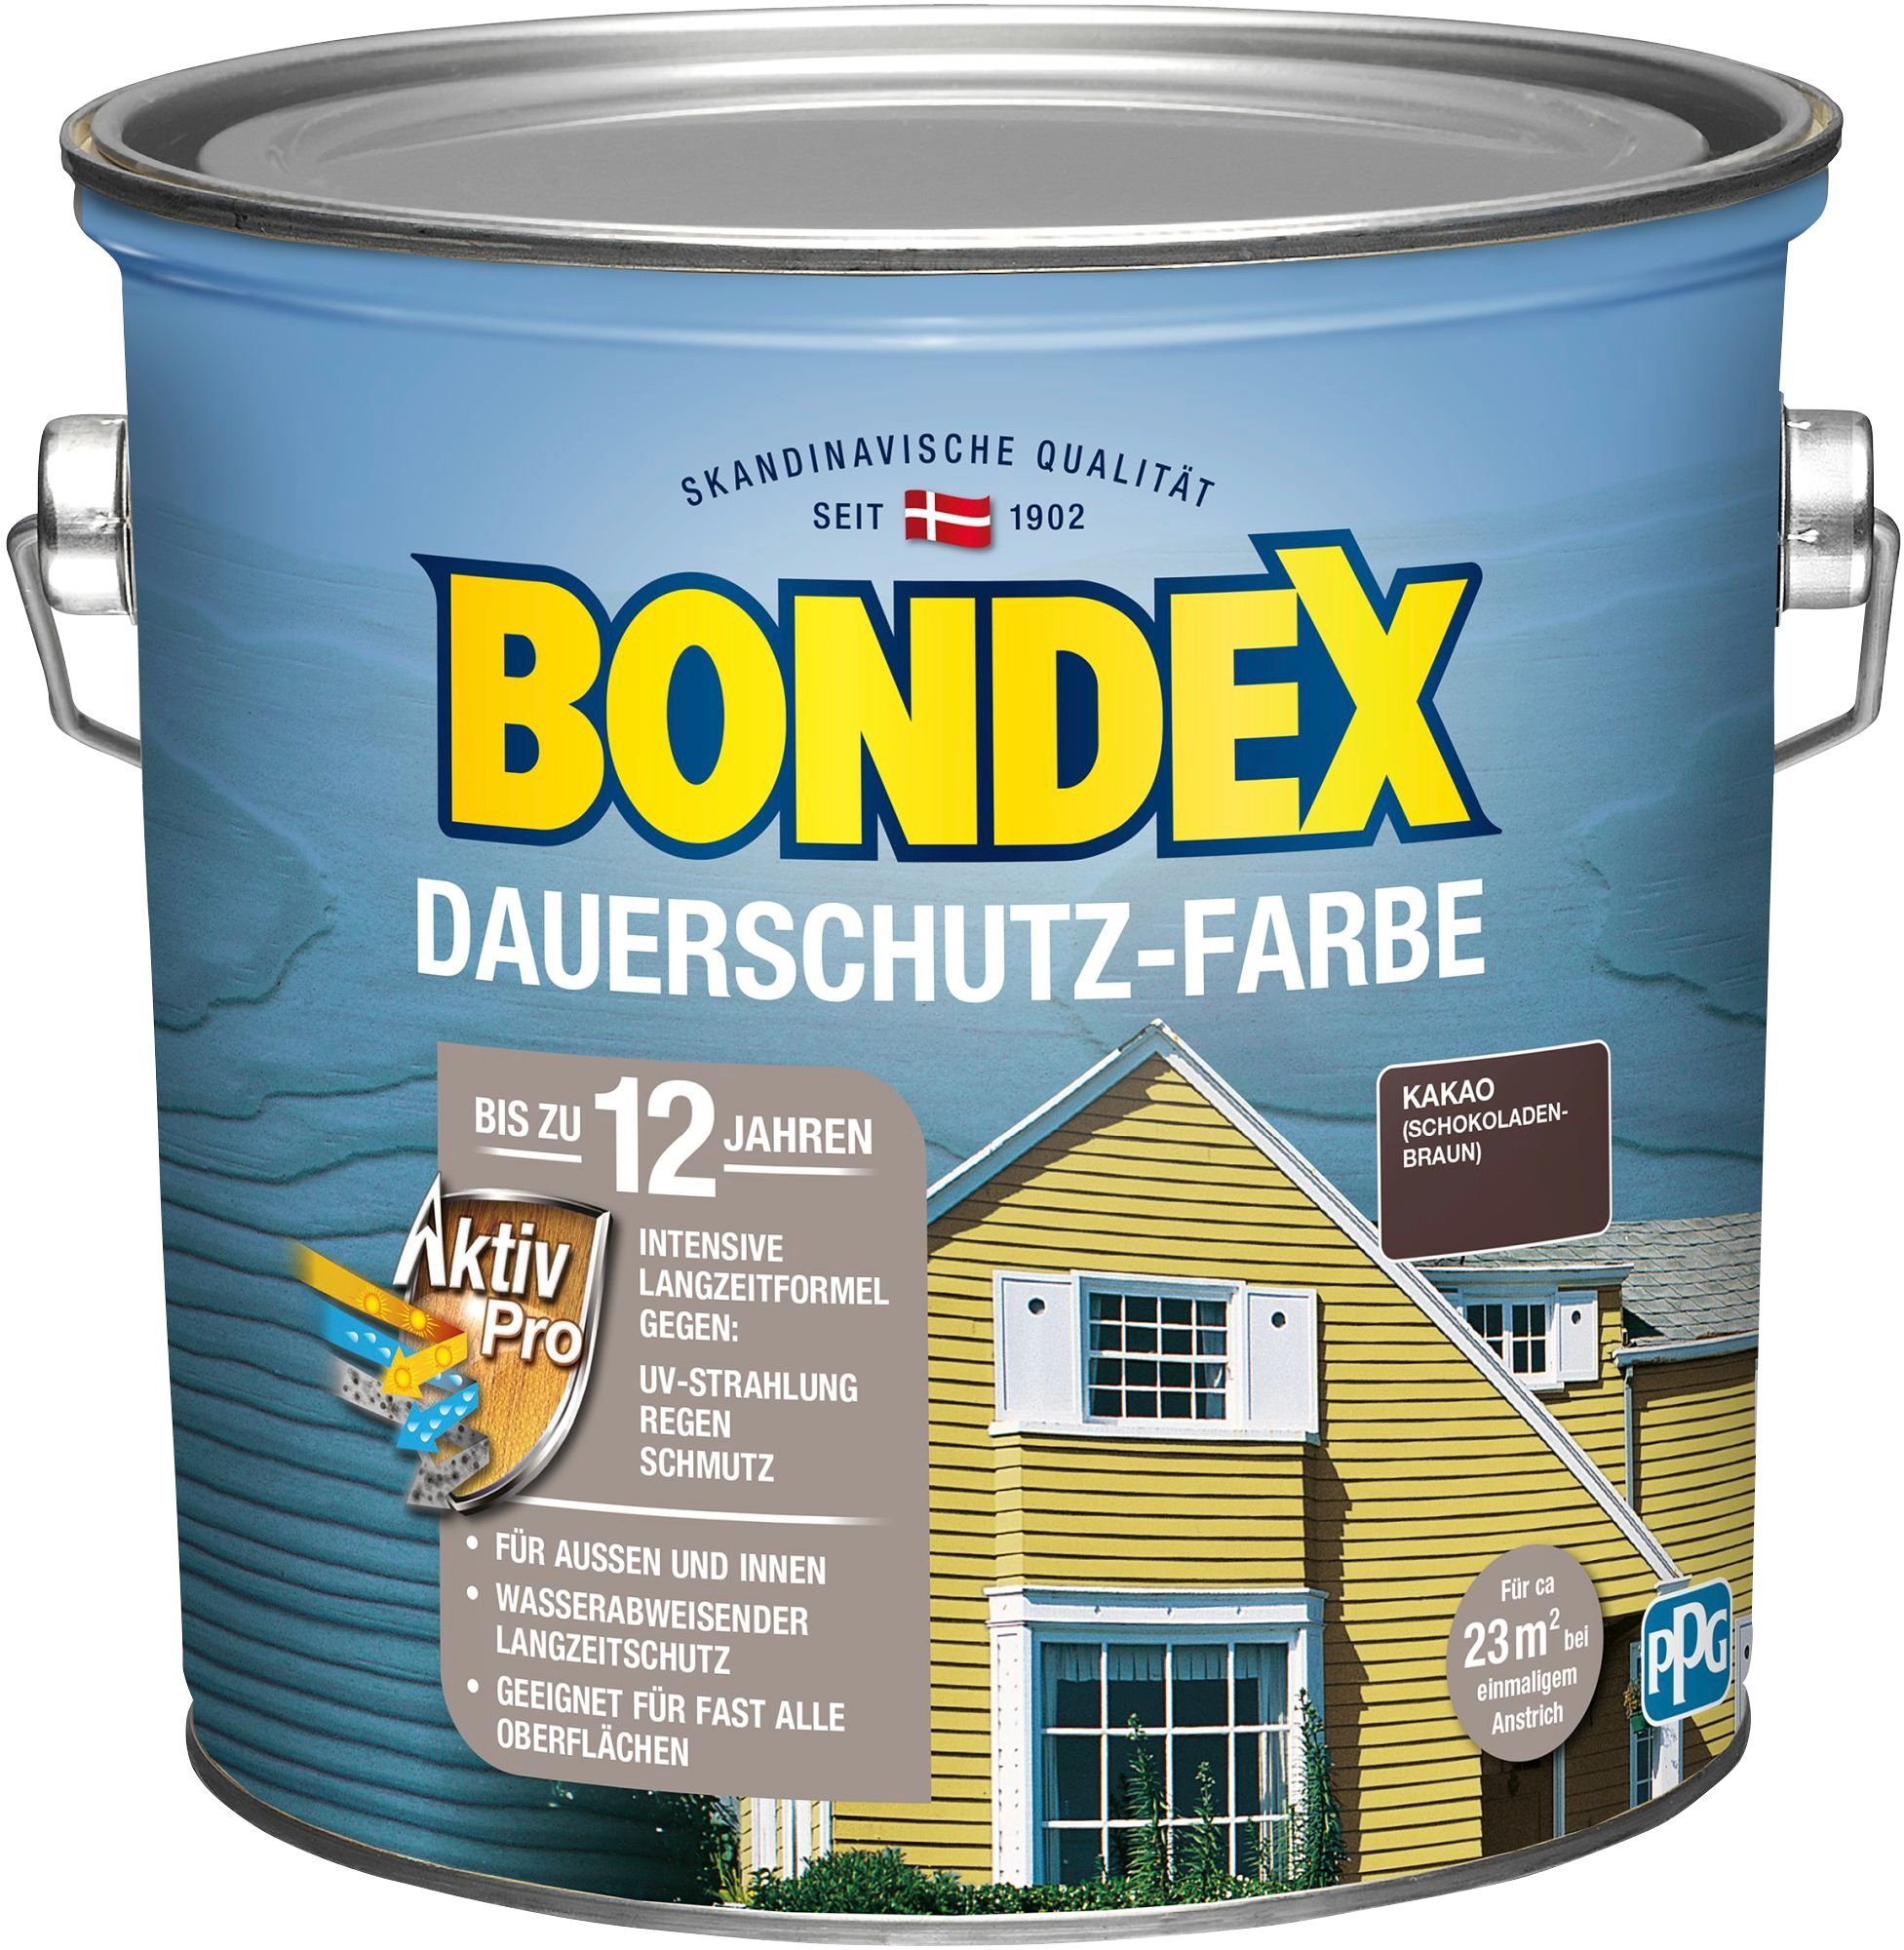 Bondex Wetterschutzfarbe DAUERSCHUTZ-FARBE, für Außen und Innen, Wetterschutz mit Aktiv Pro Langzeitformel Kakao / Schokoladenbraun